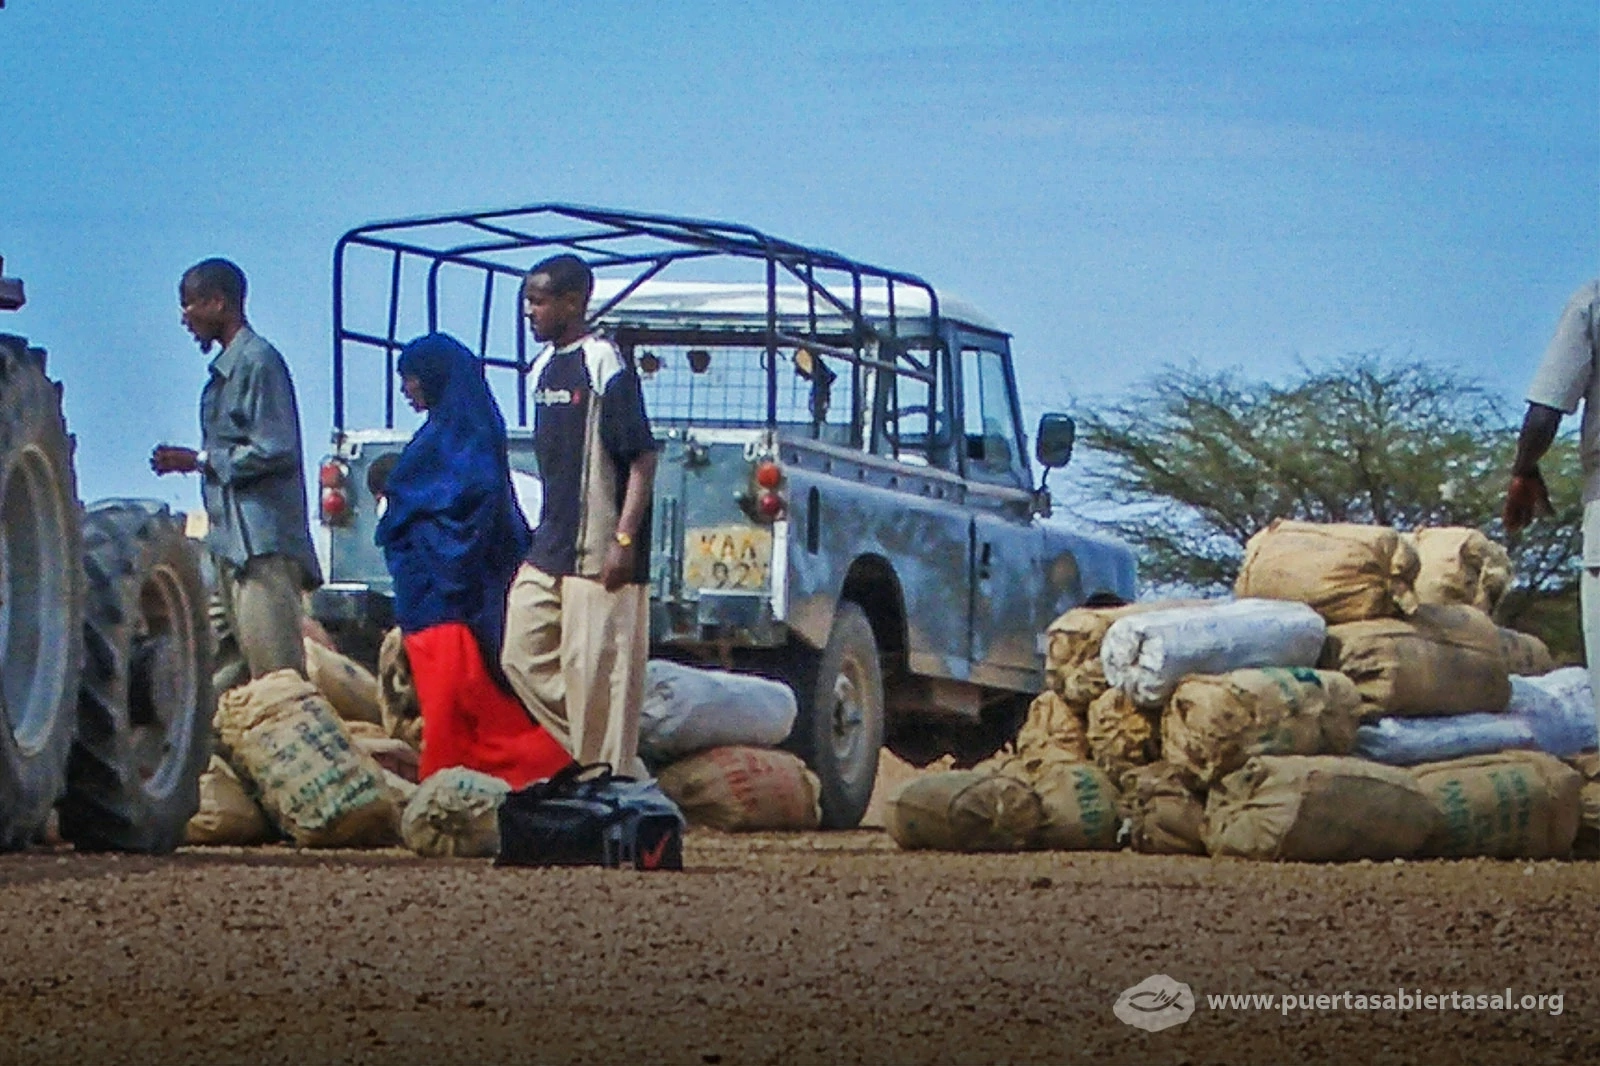 La falta de recursos vuelve más difícil la situación en Somalia